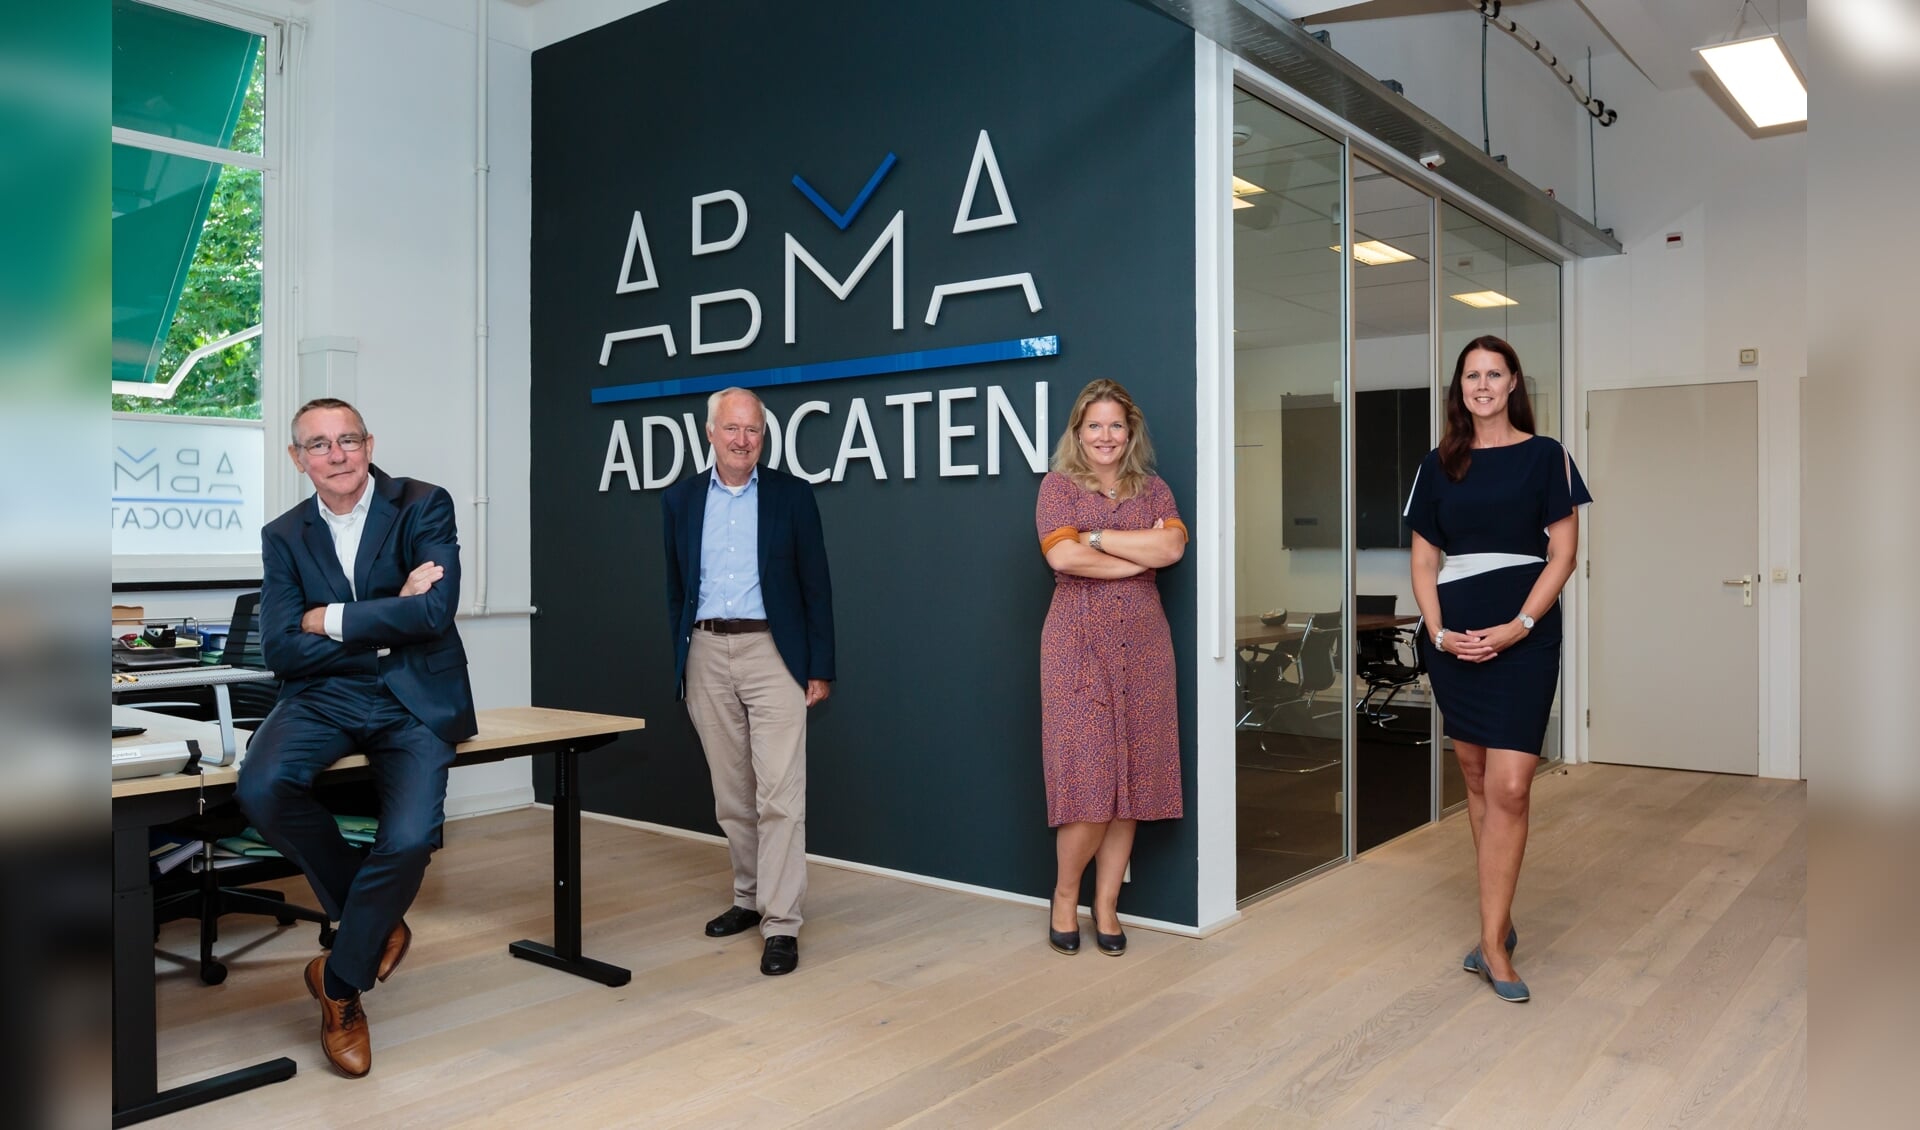 Het team van Abma Advocaten